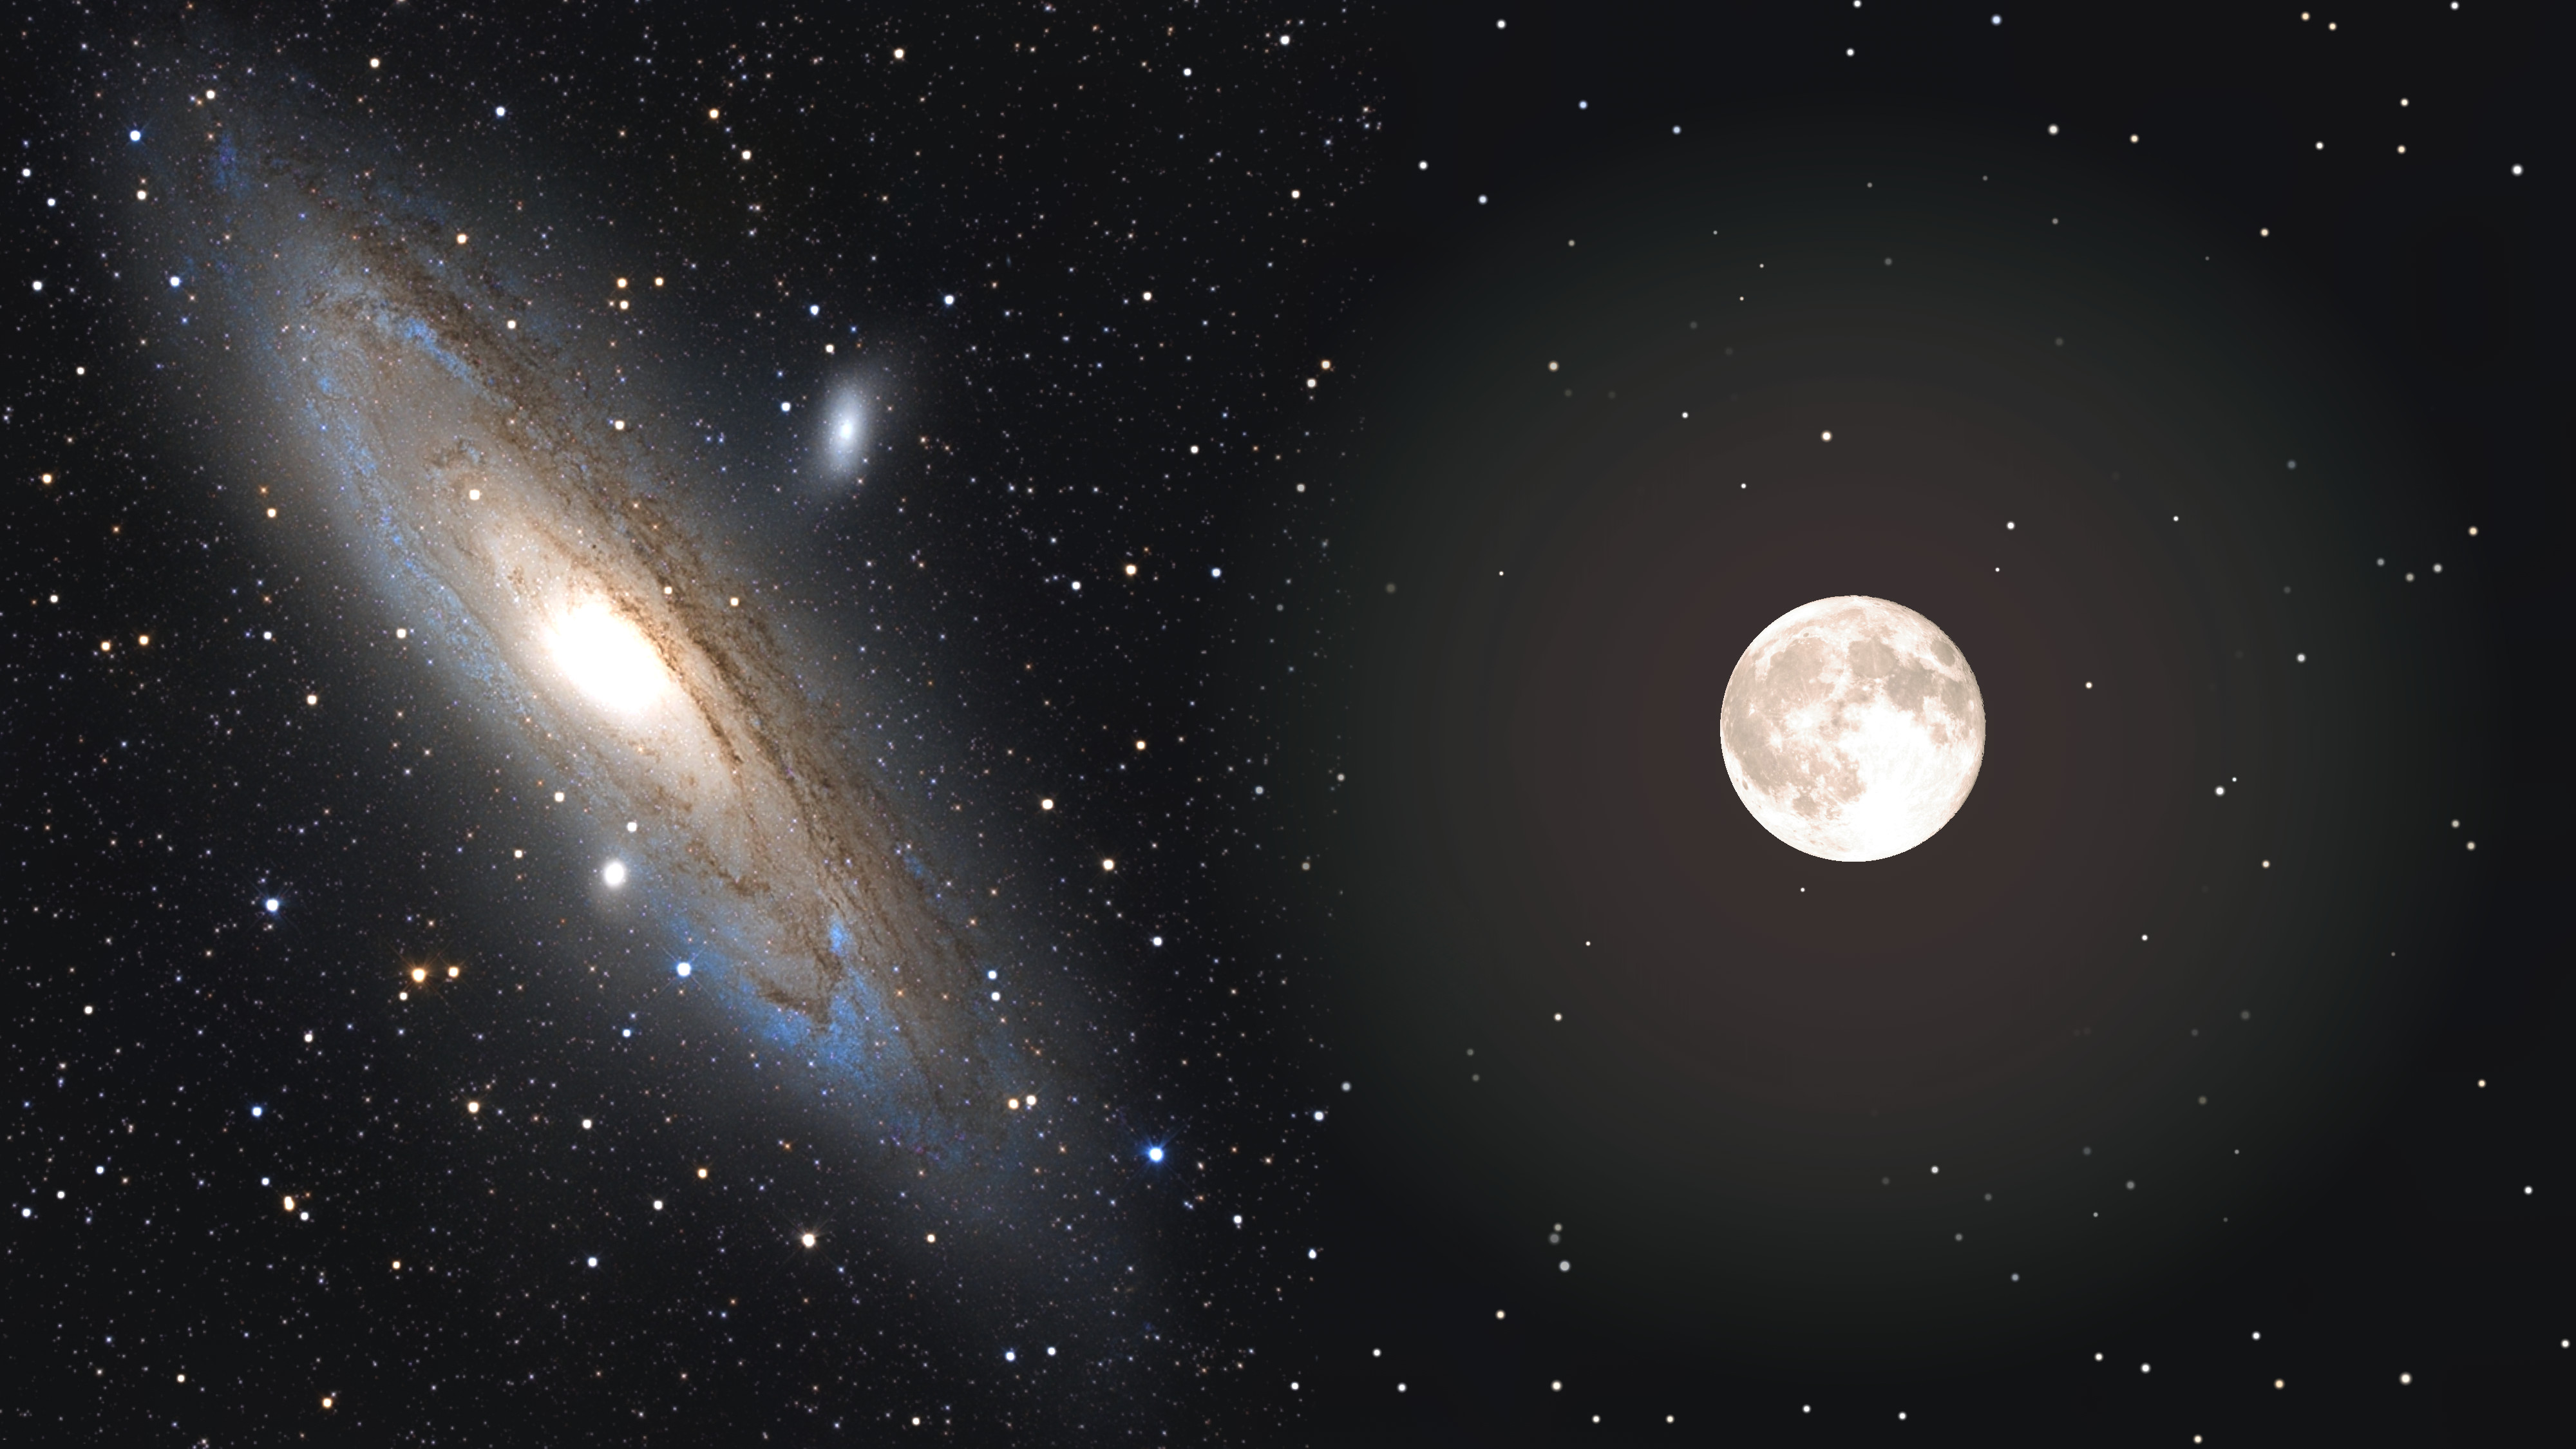 Показаны сравнительные видимые с Земли размеры галактики Андромеды и Луны — в едином масштабе. Но Луна никогда не бывает видна на небе вблизи этой галактики  